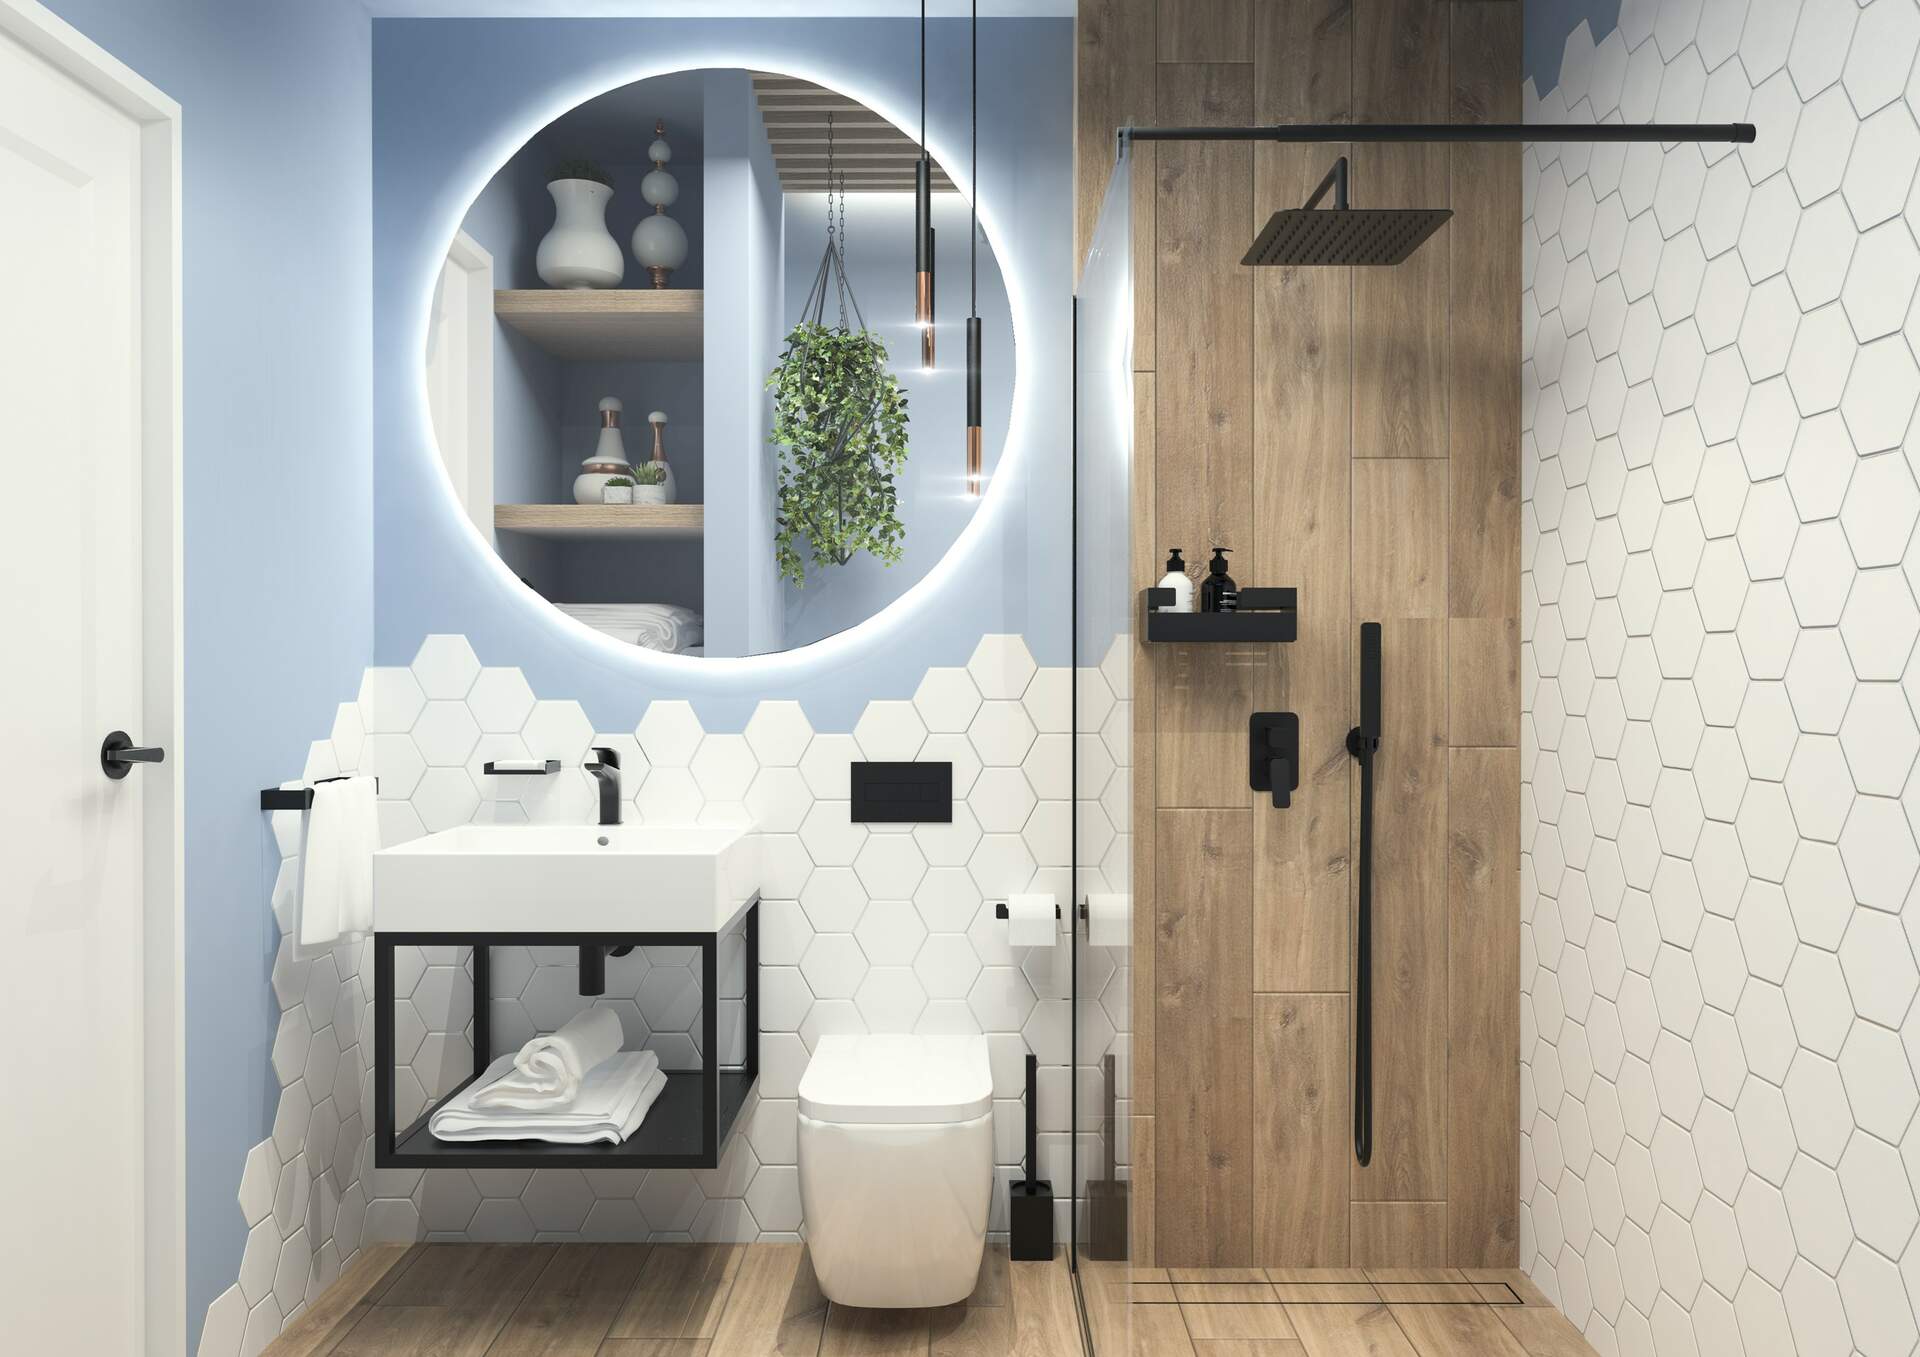 Przytulna łazienka wyłożona płytkami drewnopodobnymi i białymi heksagonalnymi, z kabiną prysznicową, wiszącą miską WC i półką z umywalką, dużym okrągłym lustrem i czarną armaturą